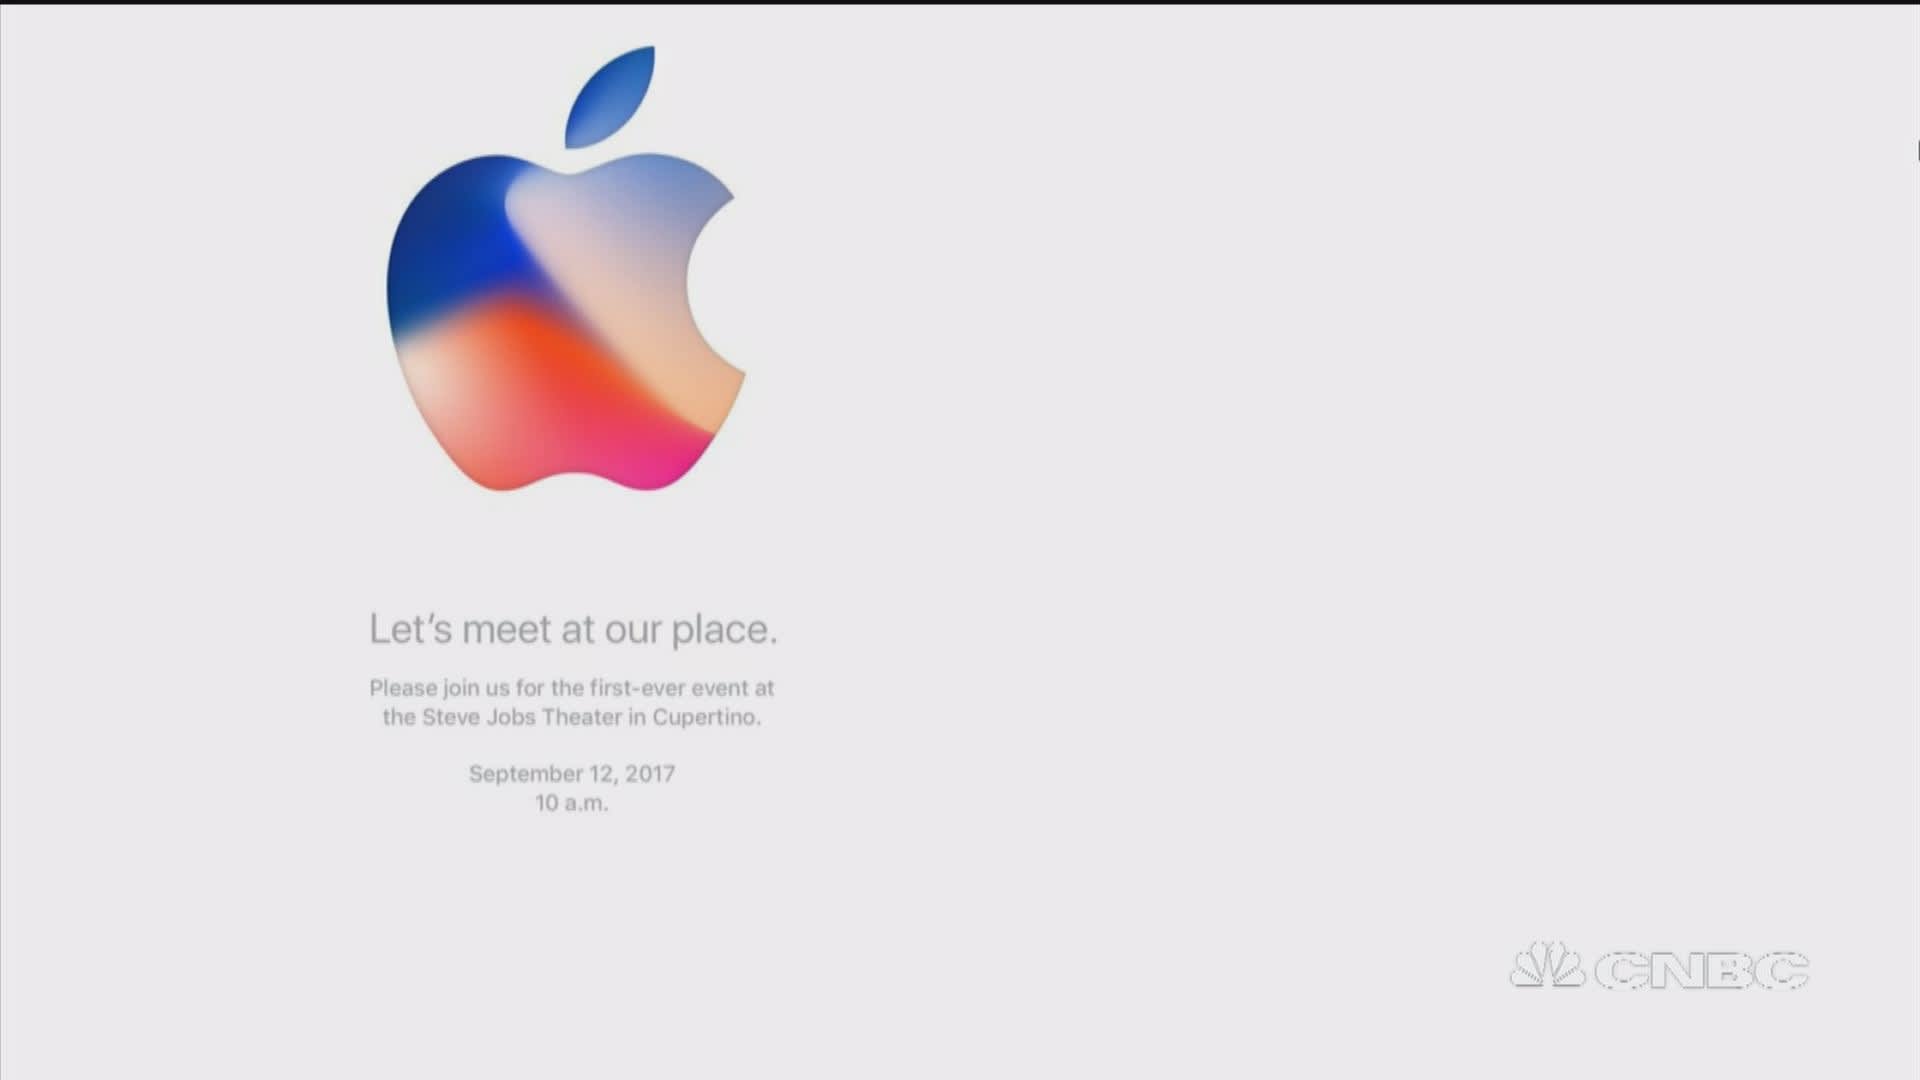 Apple Event - September 12 